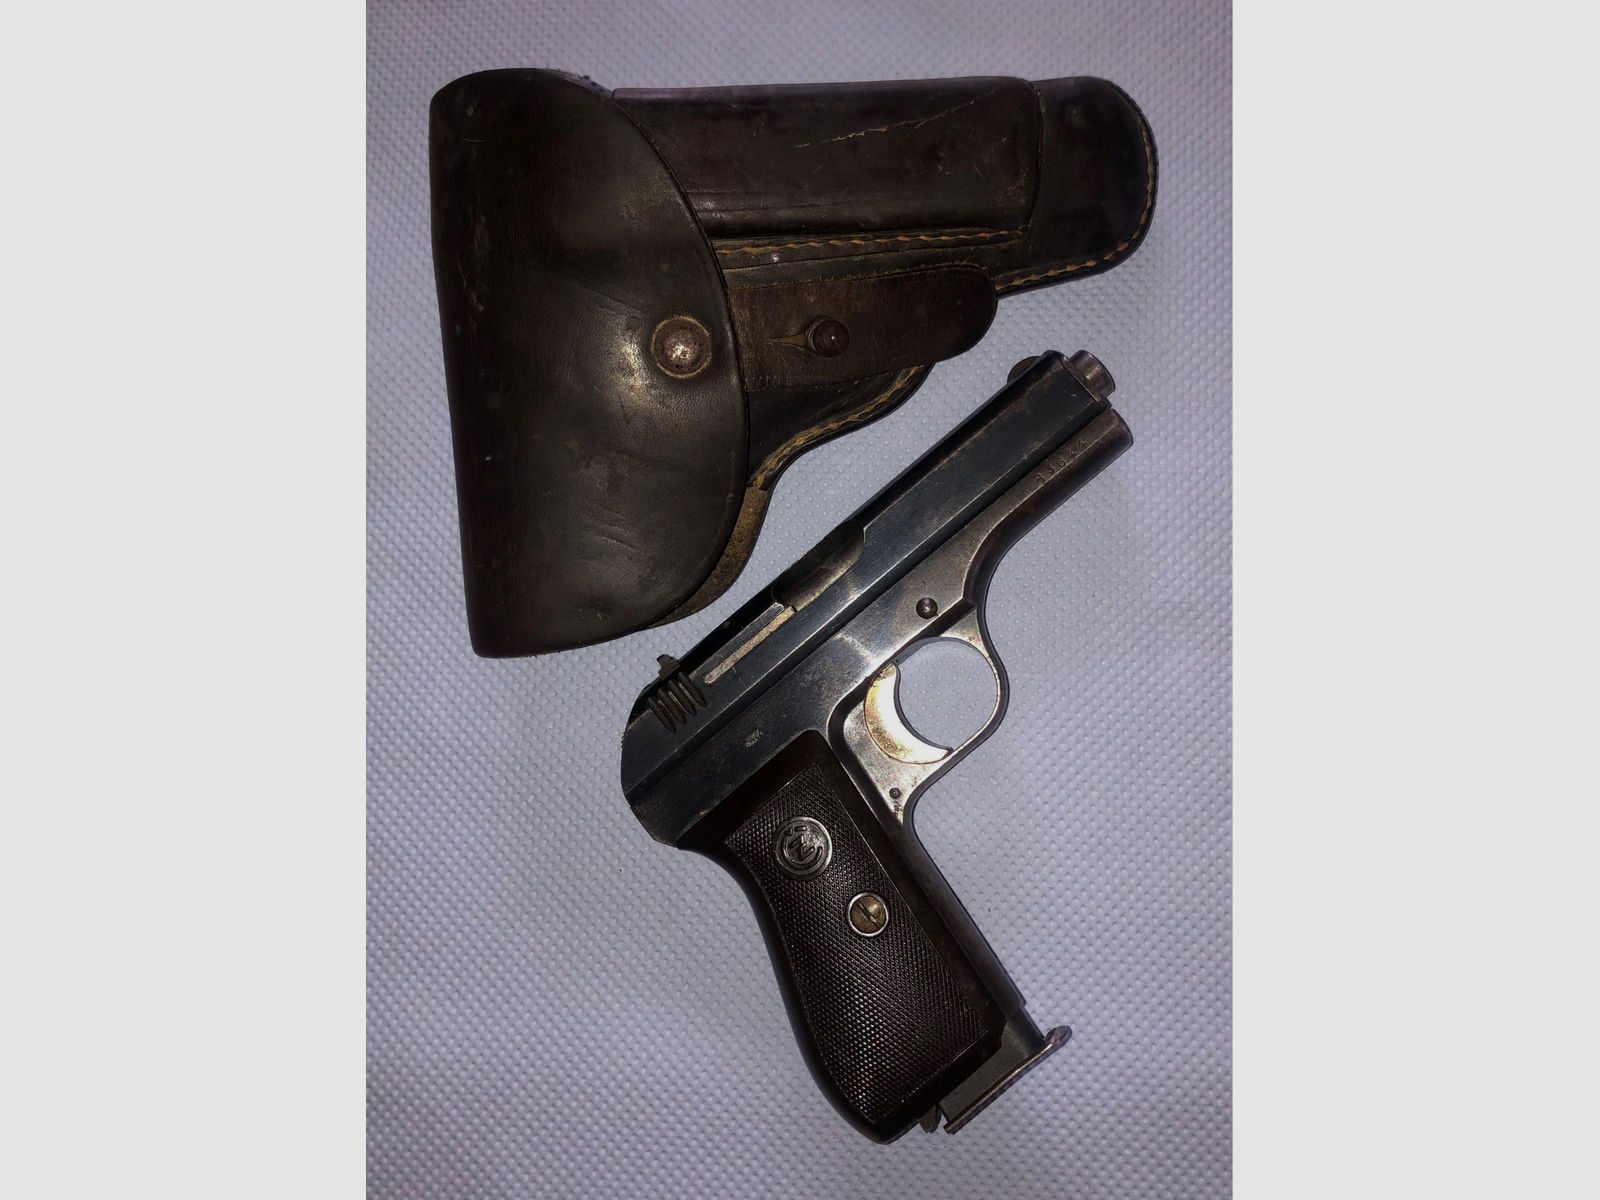 Pistole Modell 27 Kal. 7,65 Browning, Böhmische Waffenfabrik A.G. mit Originaltasche und Ersatzmagazin